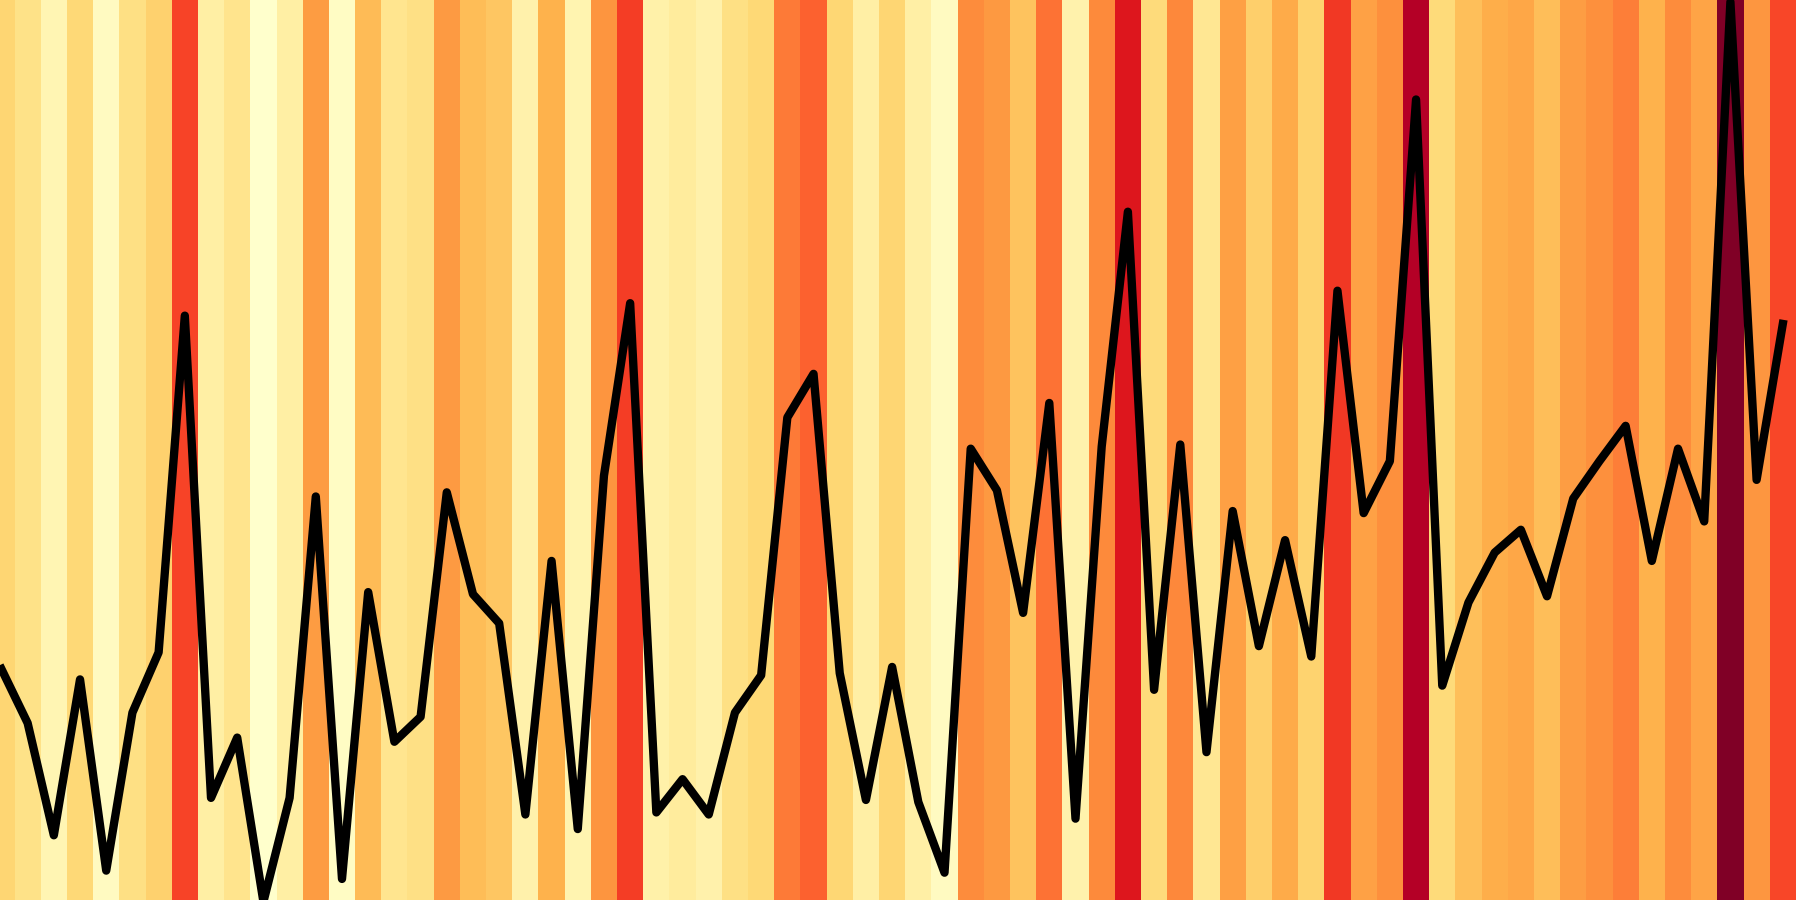 grafiek geeft aan hoe vaak de gevoelstemperatuur boven 23ºC kwam tussen 1951-2020 in Amsterdam. Hoe roder hoe vaker. Het wordt de laatste jaren gemiddeld steeds roder! 